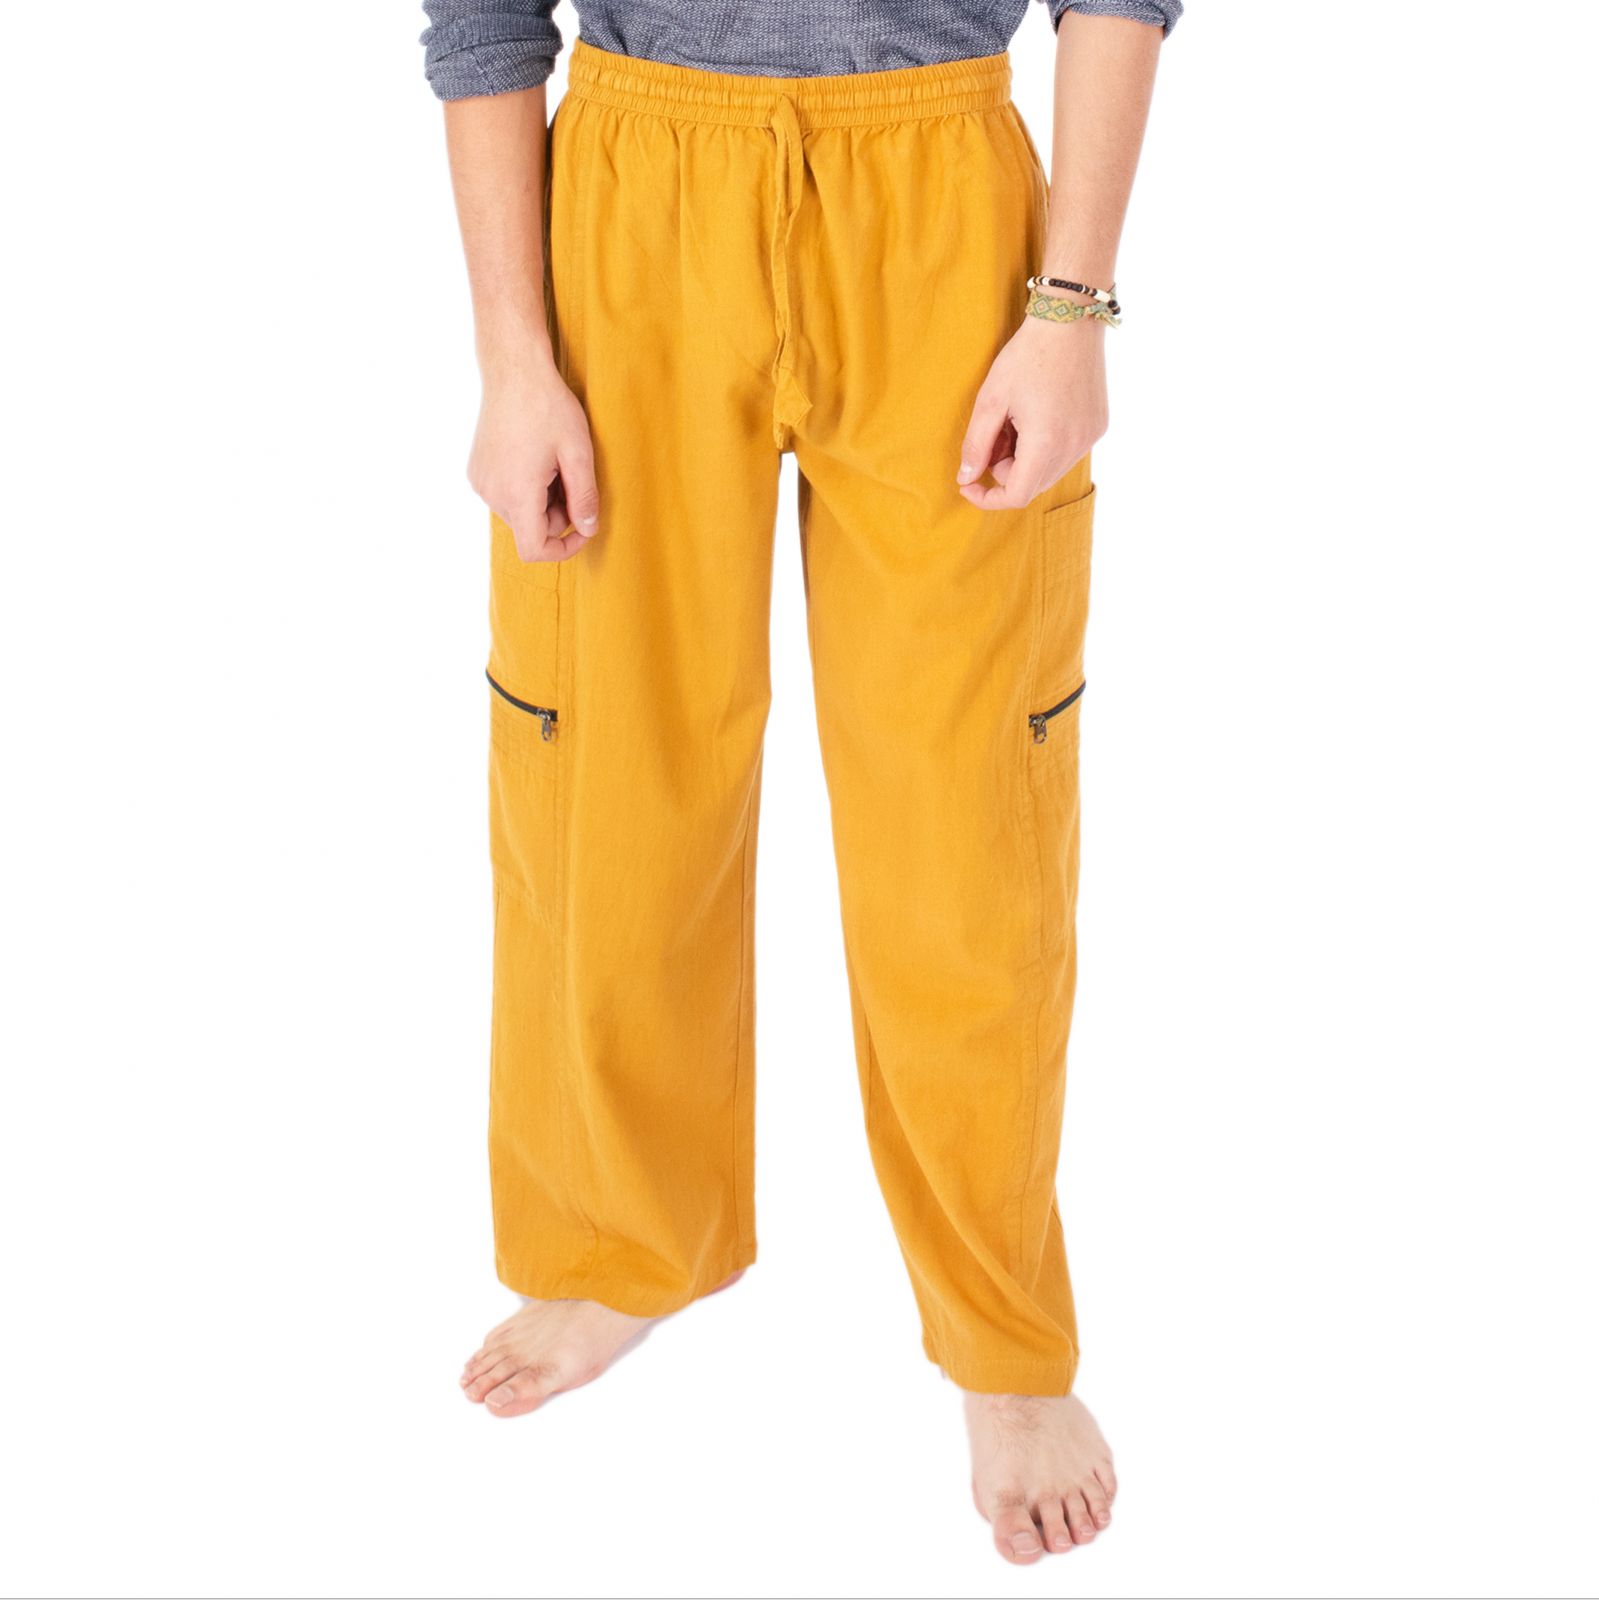 Męskie bawełniane spodnie żółte Taral Mustard Yellow Nepal